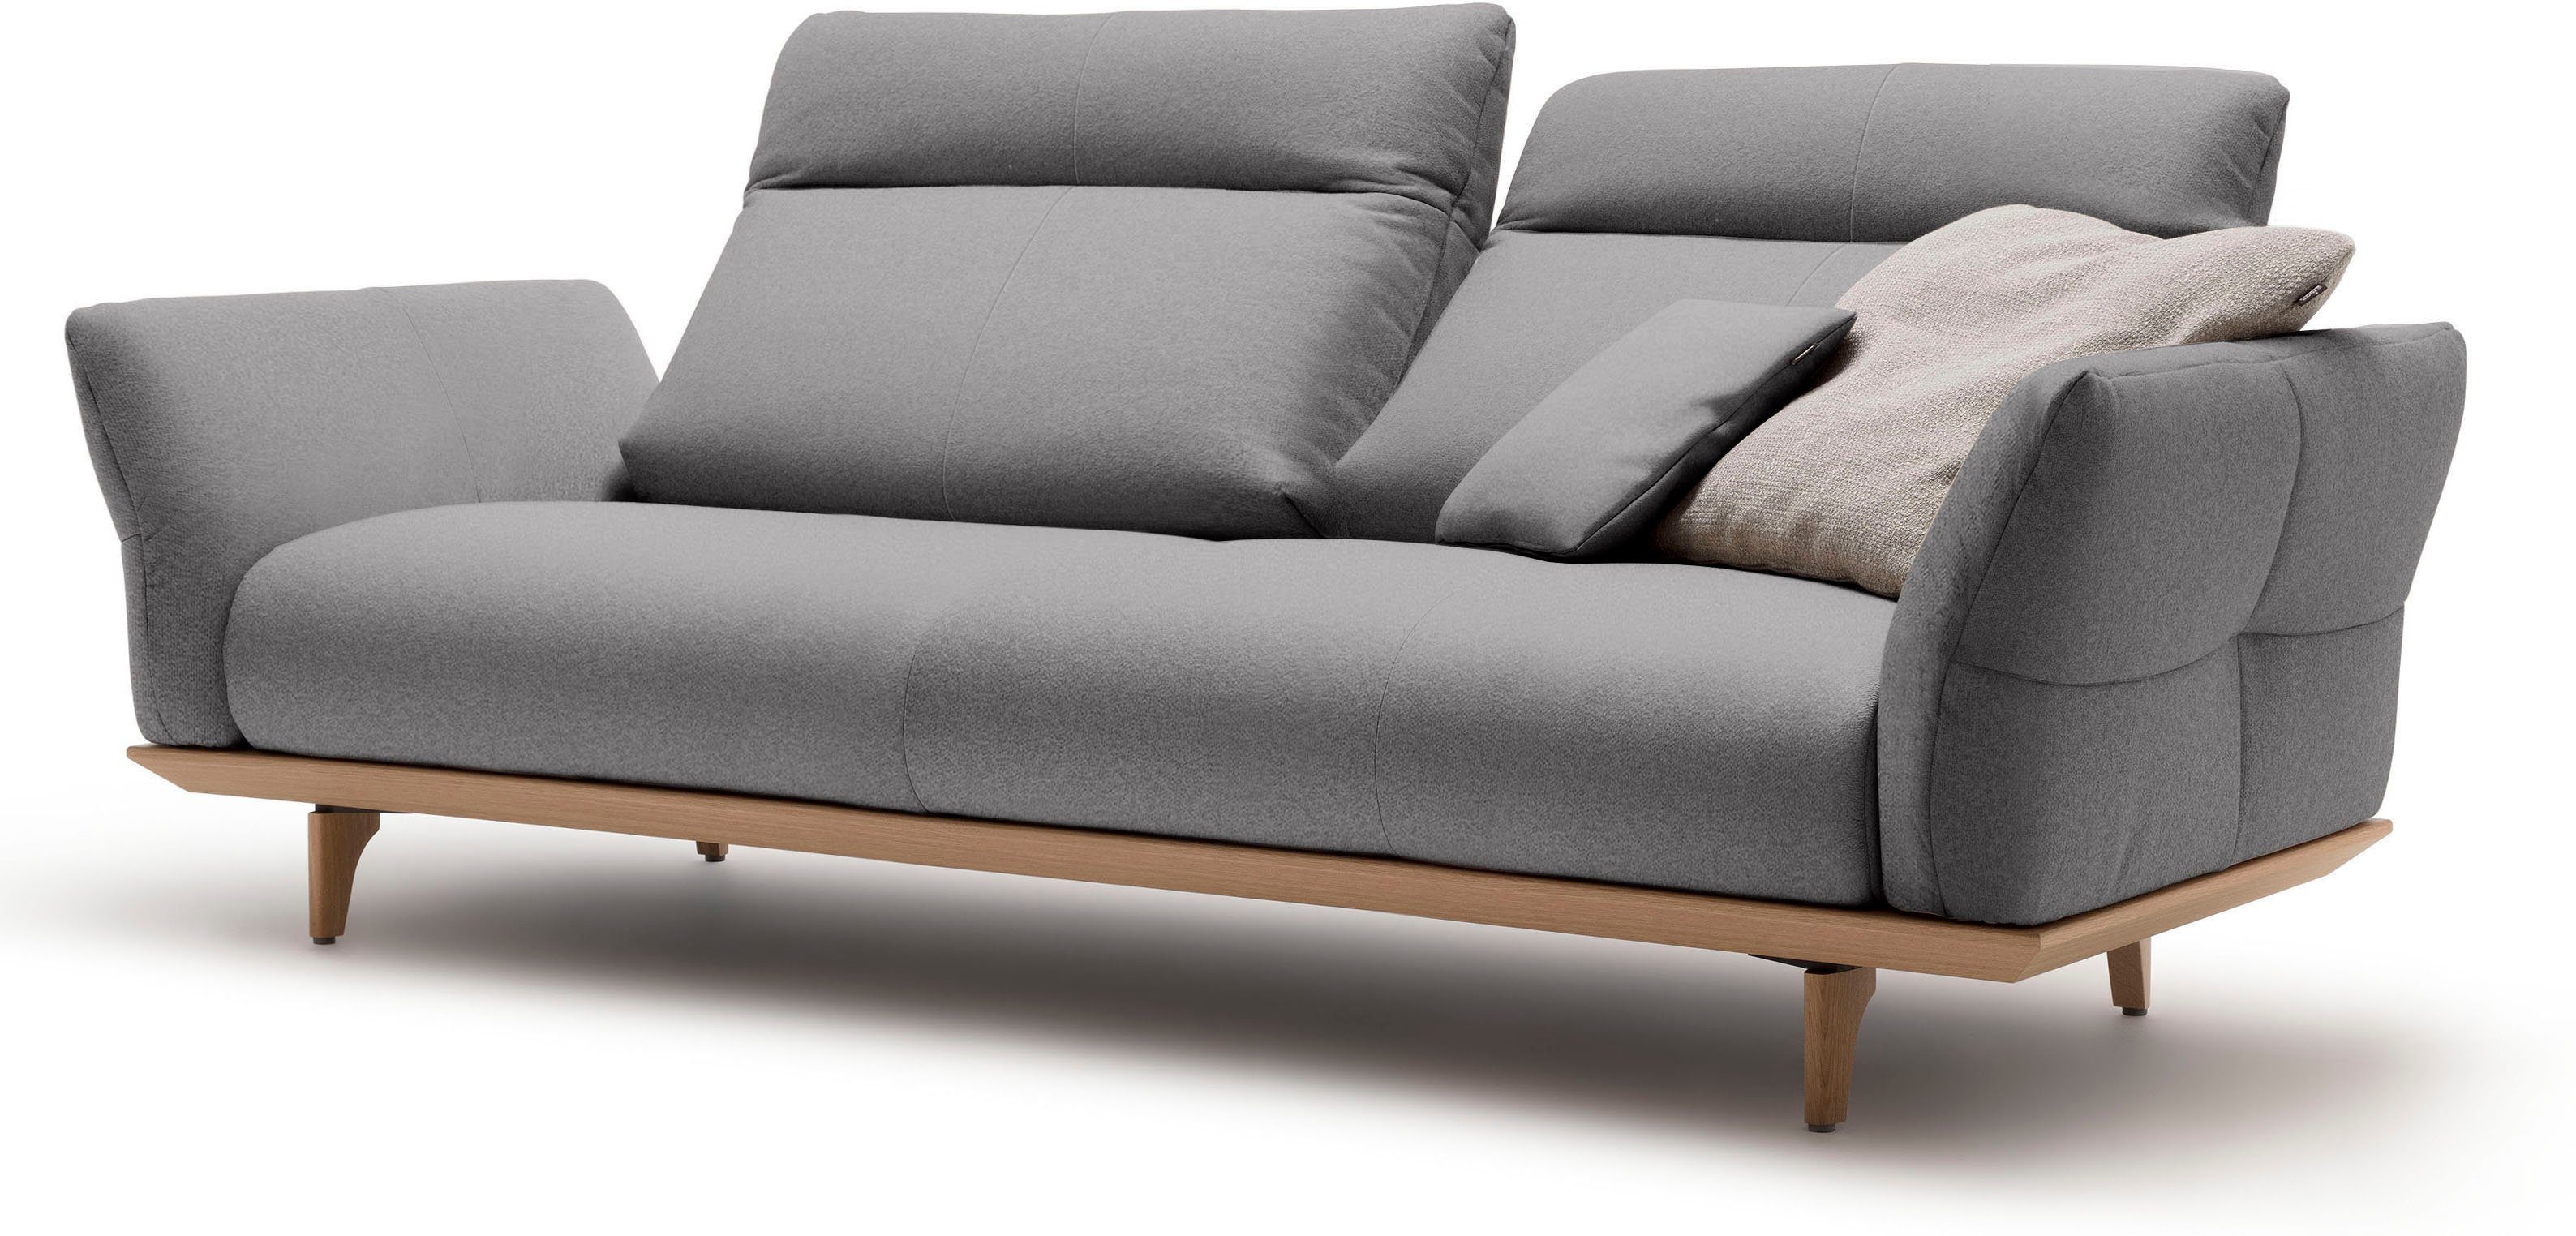 hülsta sofa Füße 208 Sockel Eiche, Eiche cm natur, hs.460, 3-Sitzer in Breite